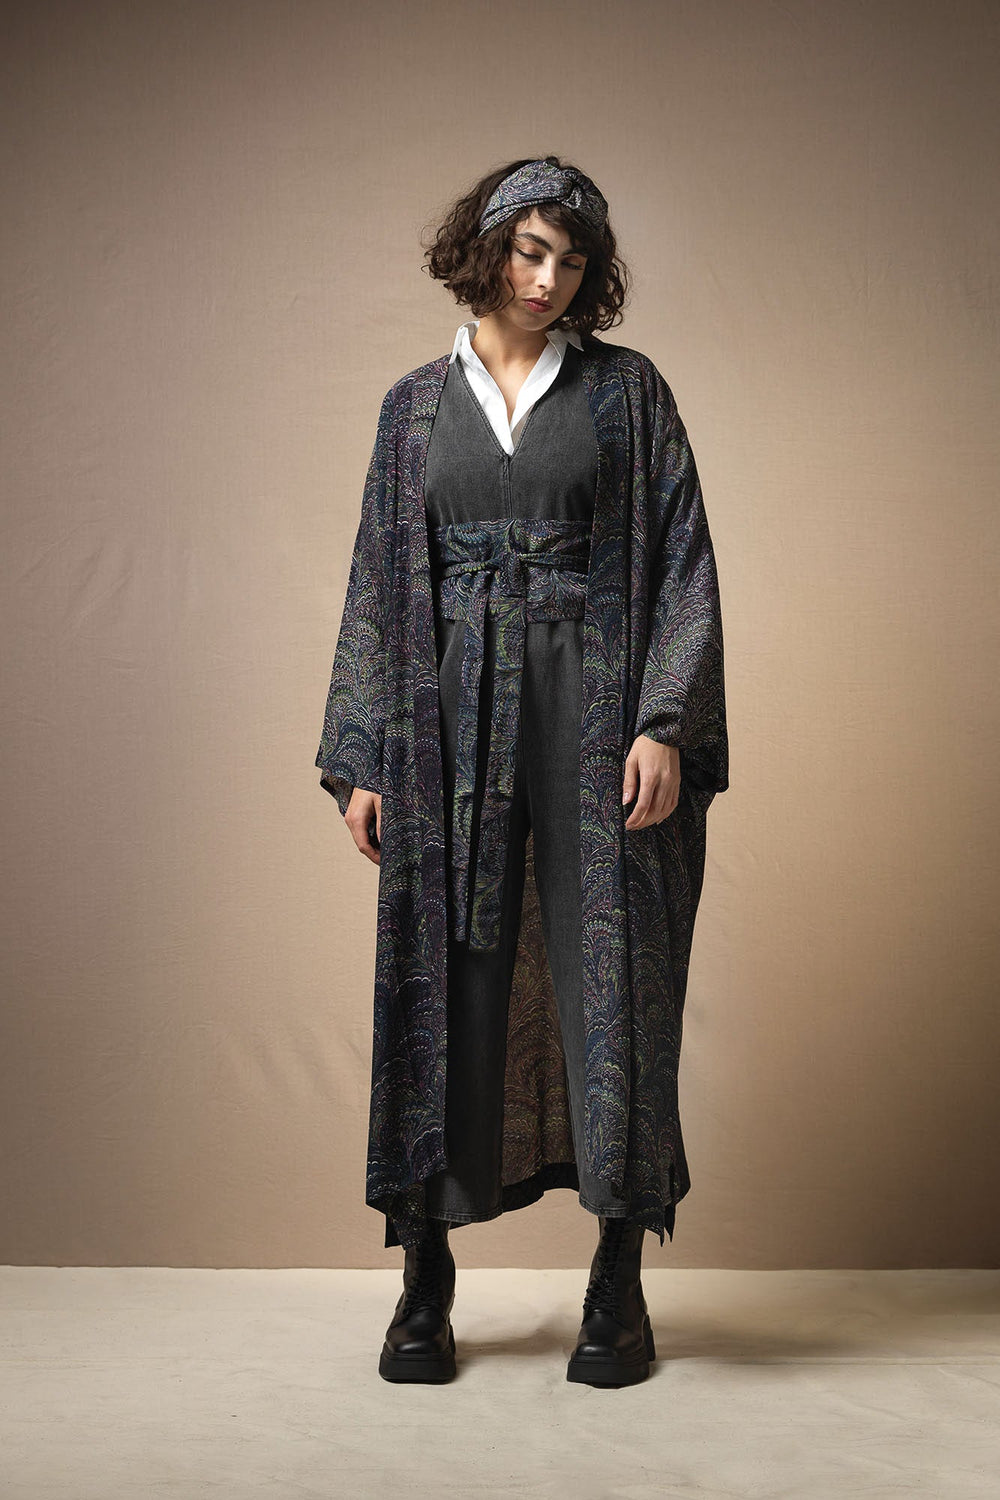 Marbled Indigo Crepe Long Kimono - One Hundred Stars